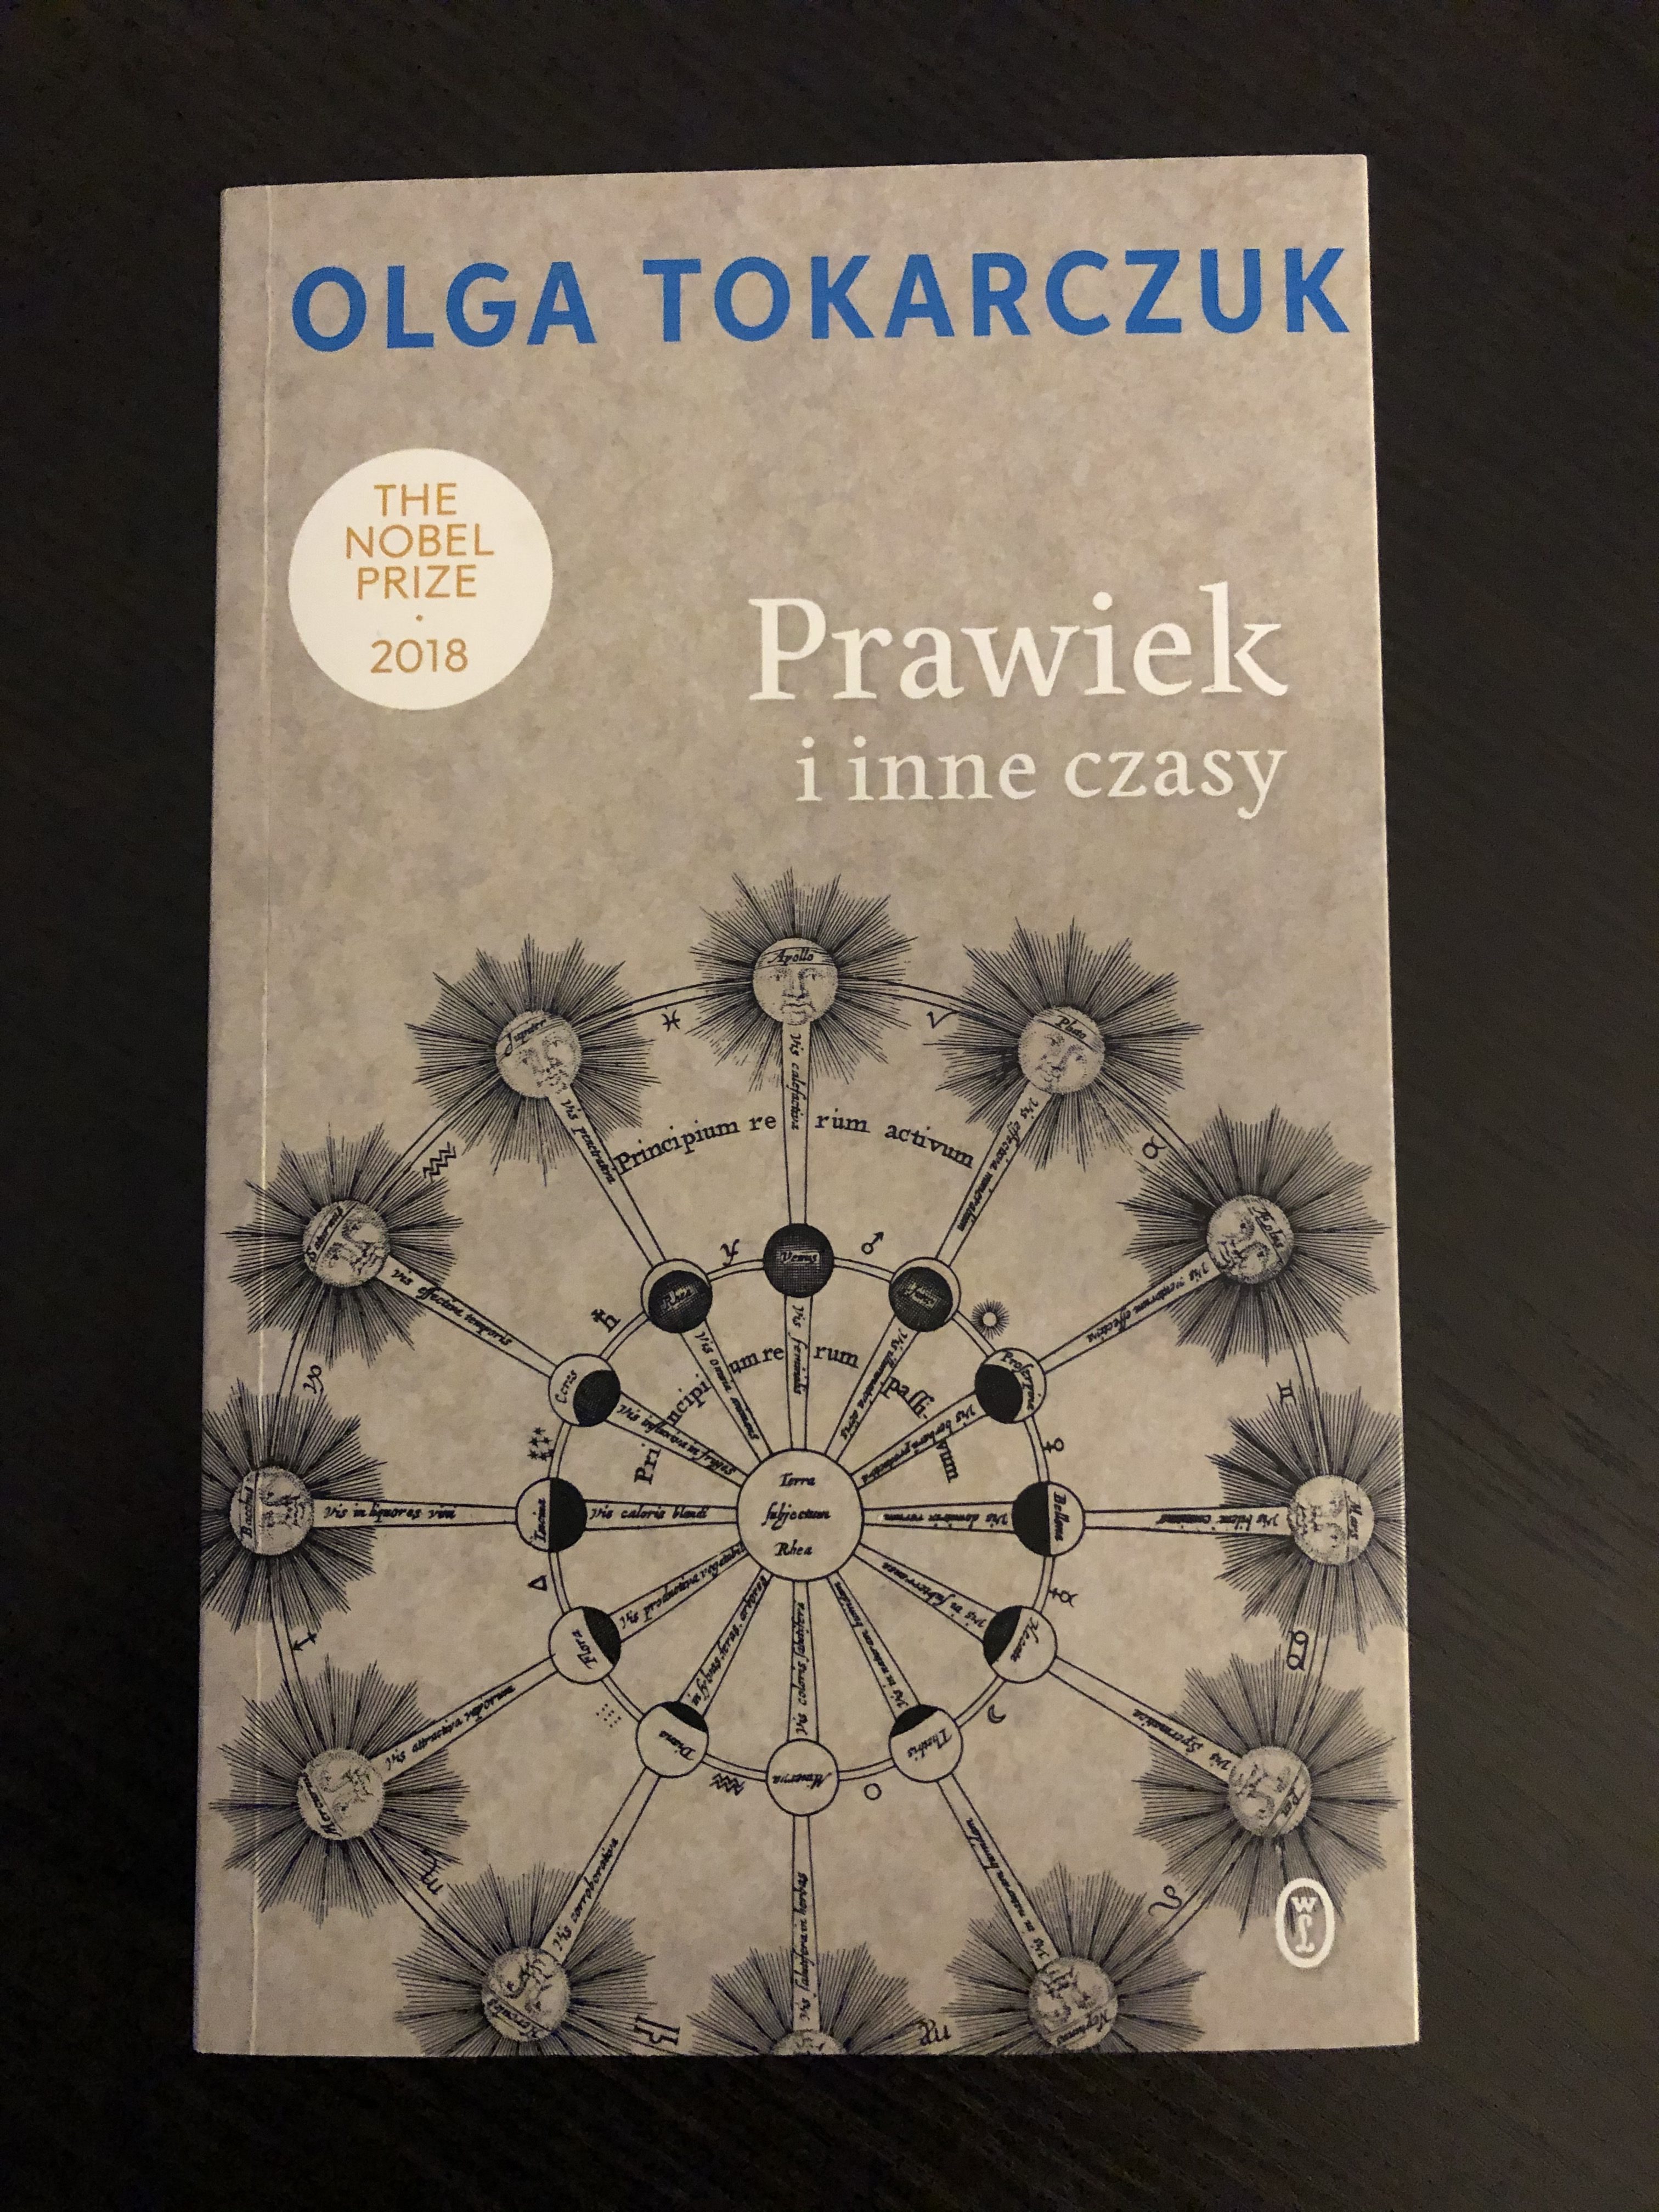 Radny Łukasz Banaś chce uhonorować Olgę Tokarczuk. Pomyślał o zakupie jej książek do bibliotek w Częstochowie